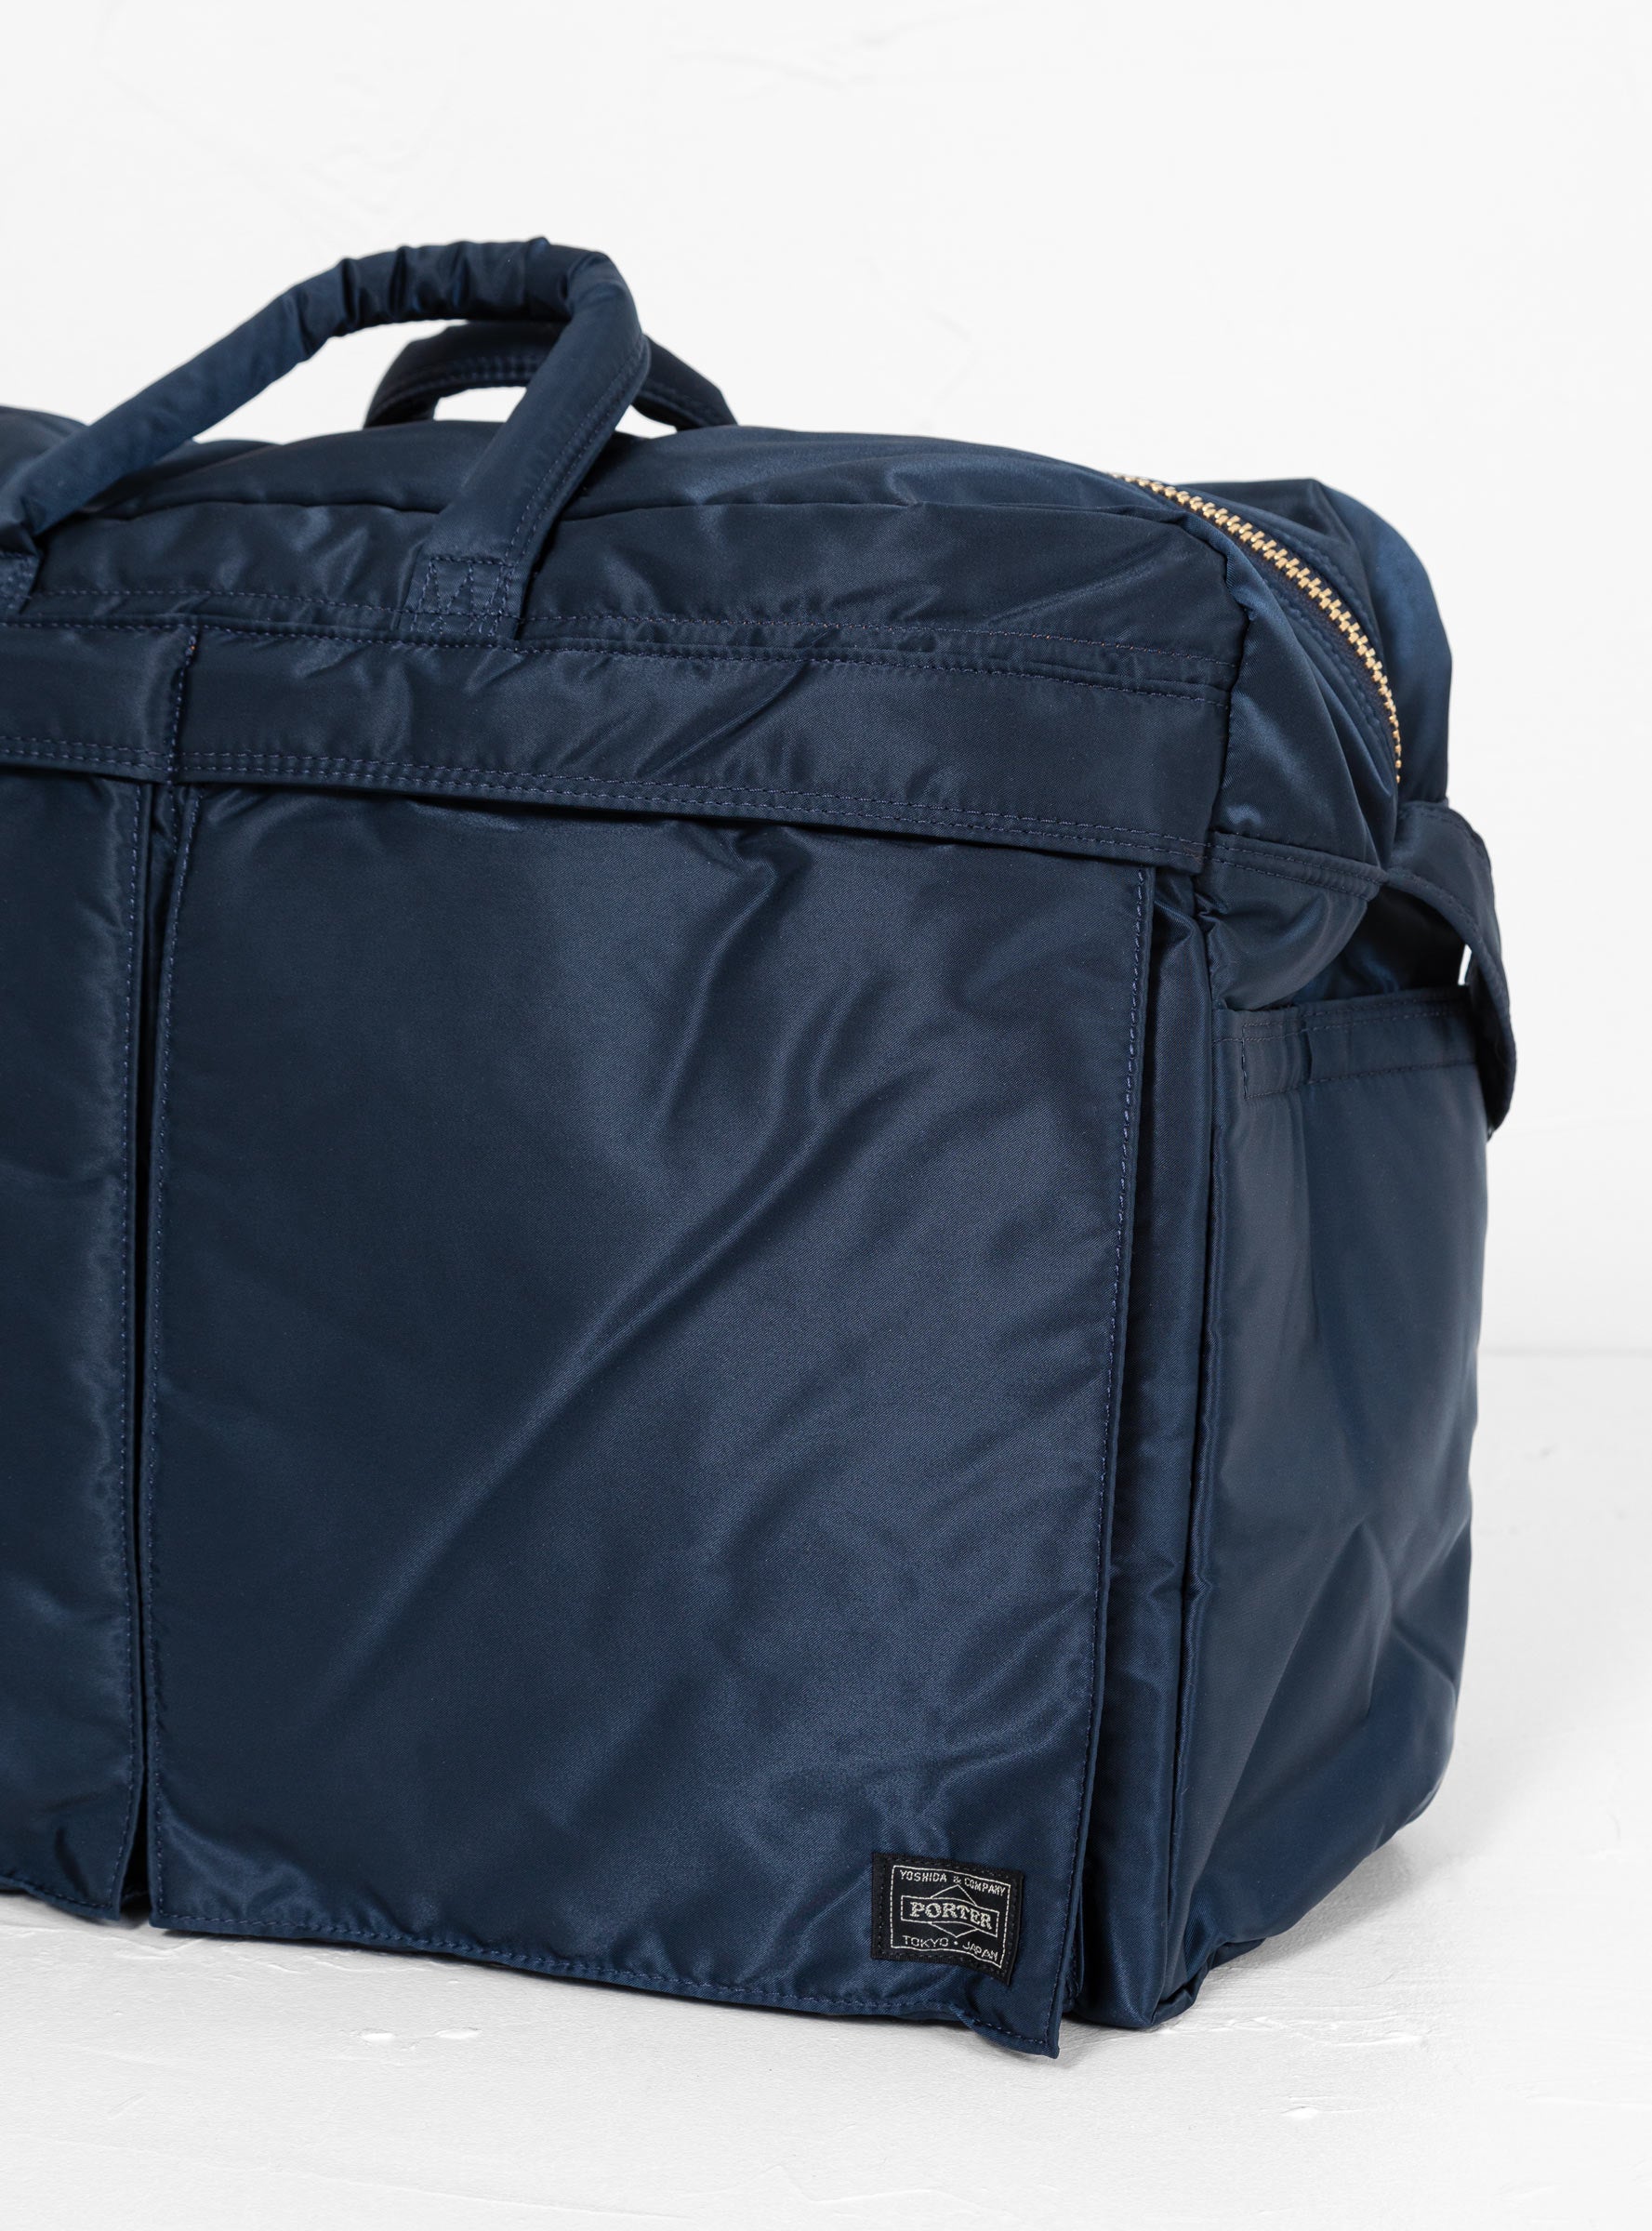 TANKER 2-Way Duffle Bag Small Iron Blue by Porter Yoshida & Co ...